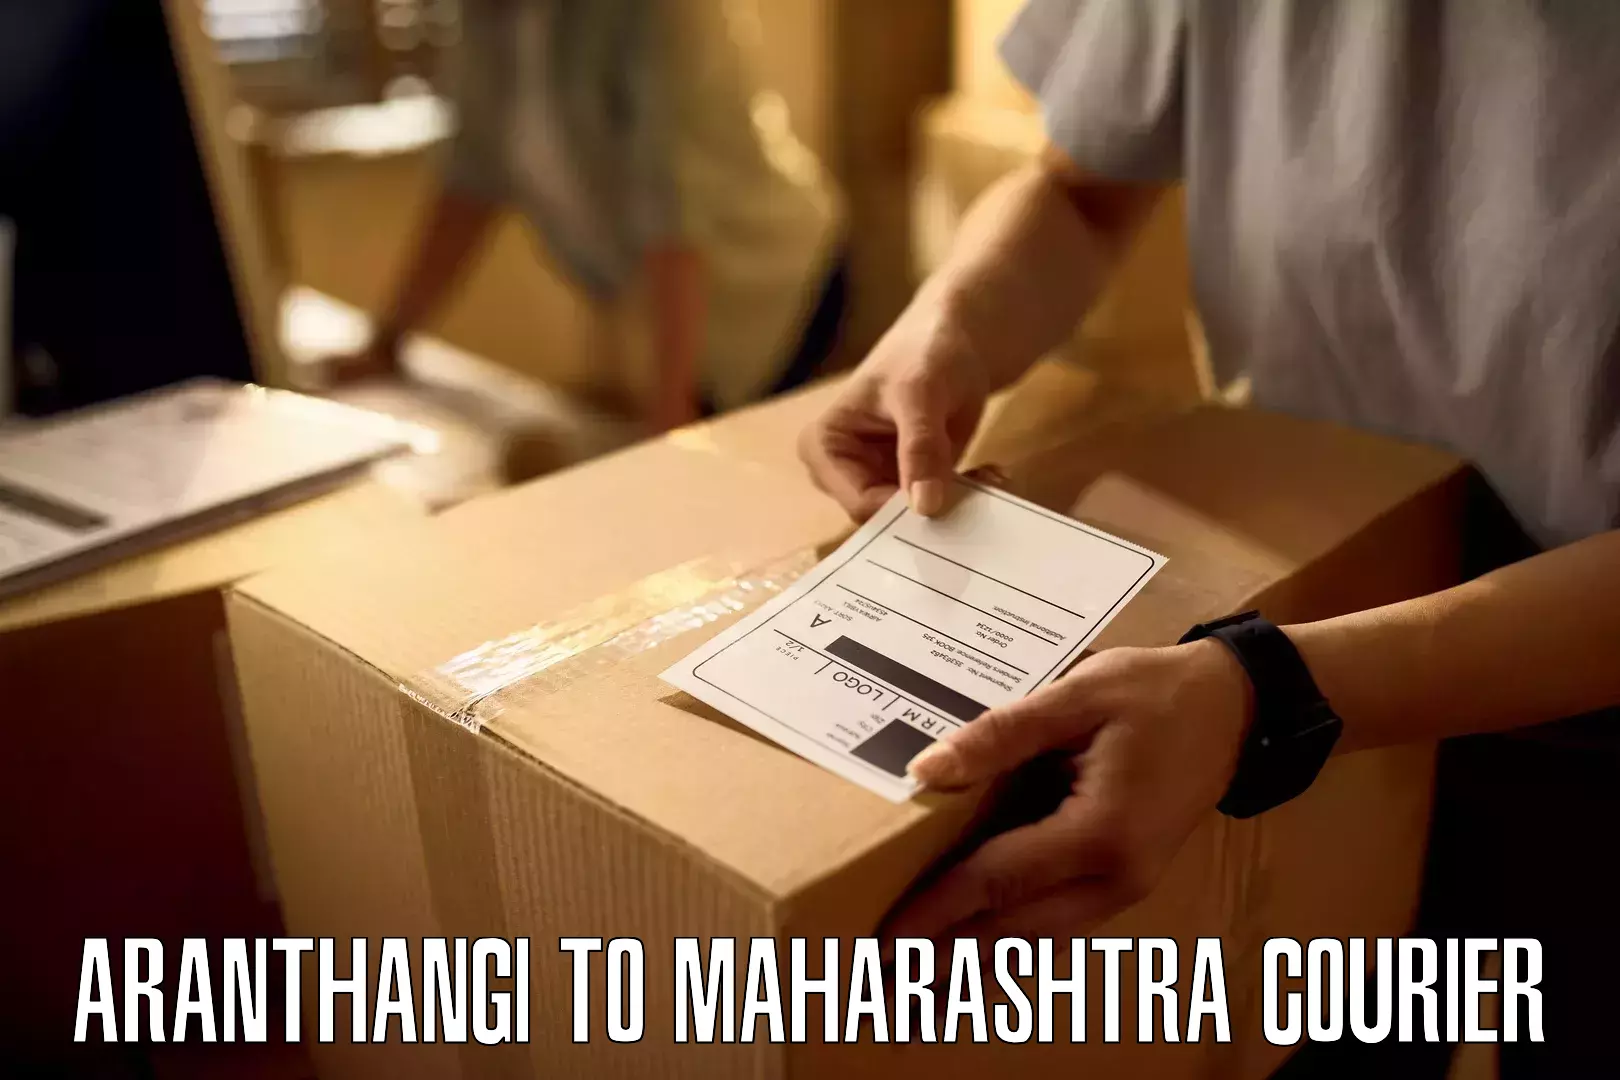 Modern delivery methods Aranthangi to Maharashtra